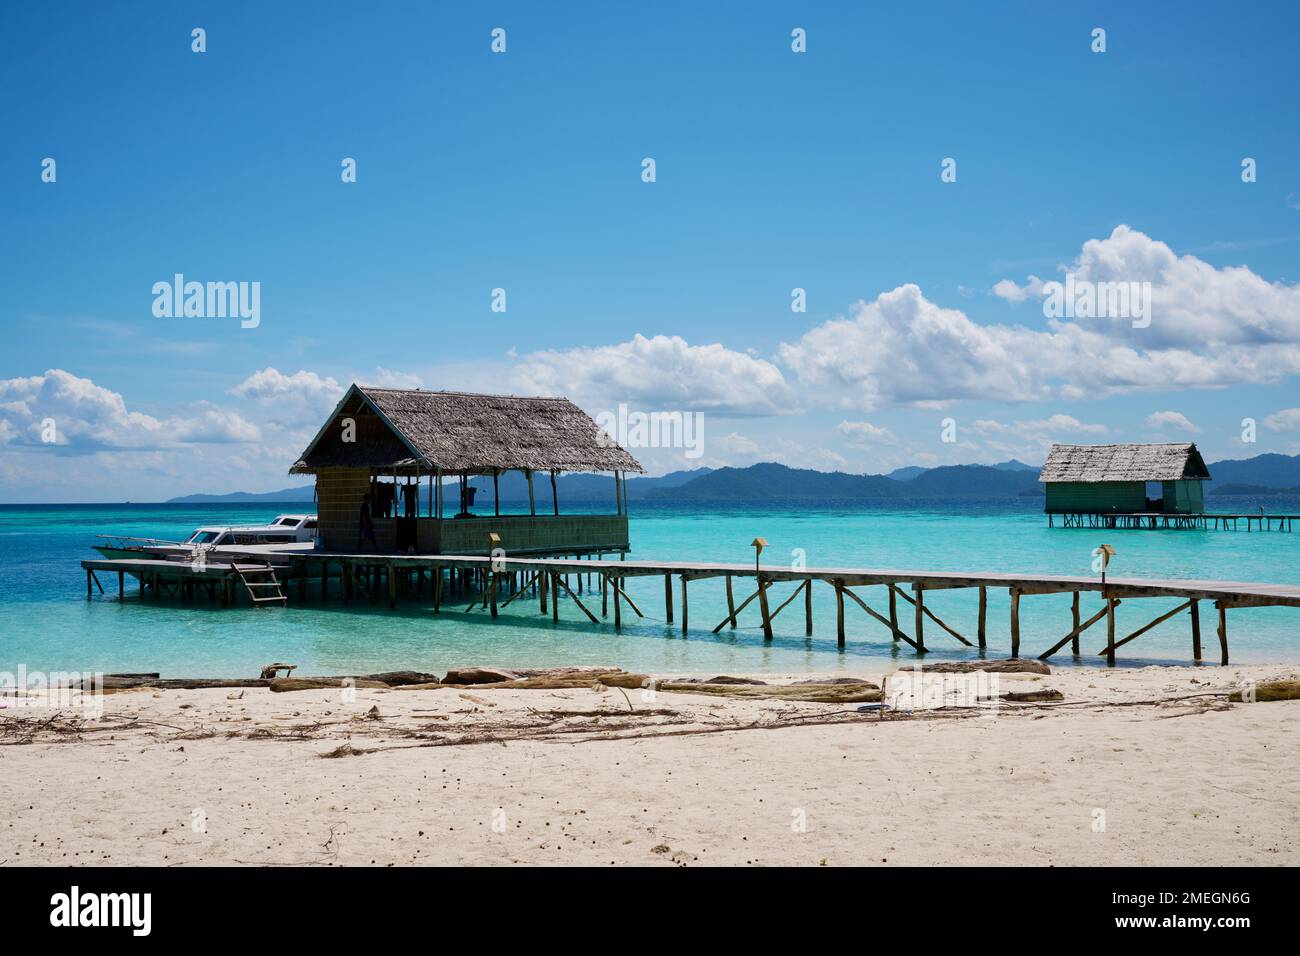 Wai Diving Resort on Raja Ampat Islands, Indonesia Stock Photo